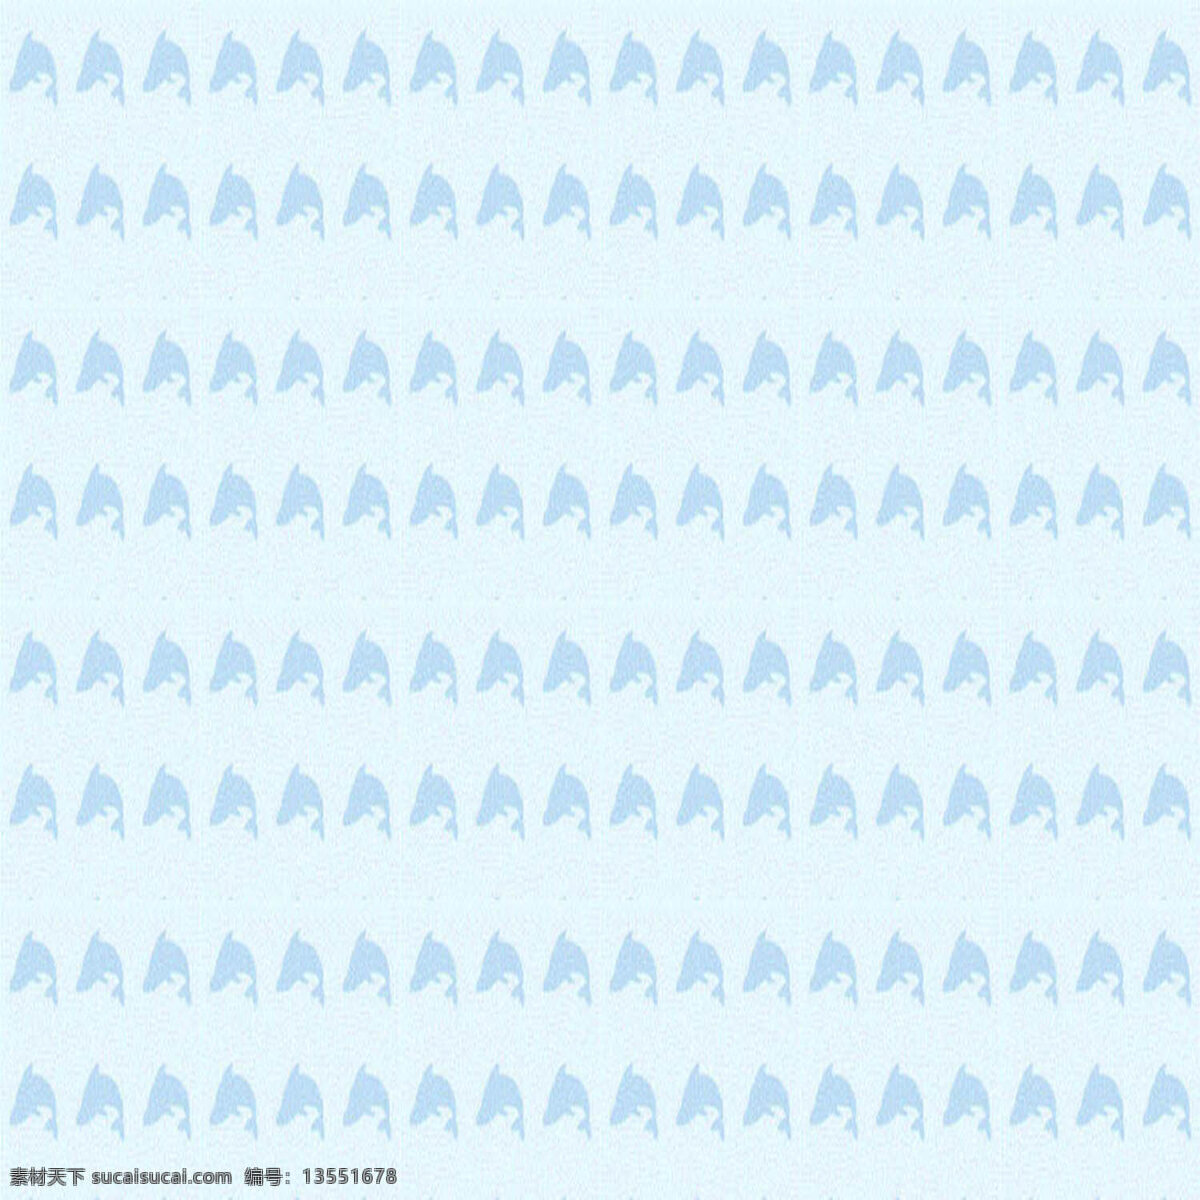 蓝色 海豚 纹理 花纹 纹理素材 纹路背景 背景图片